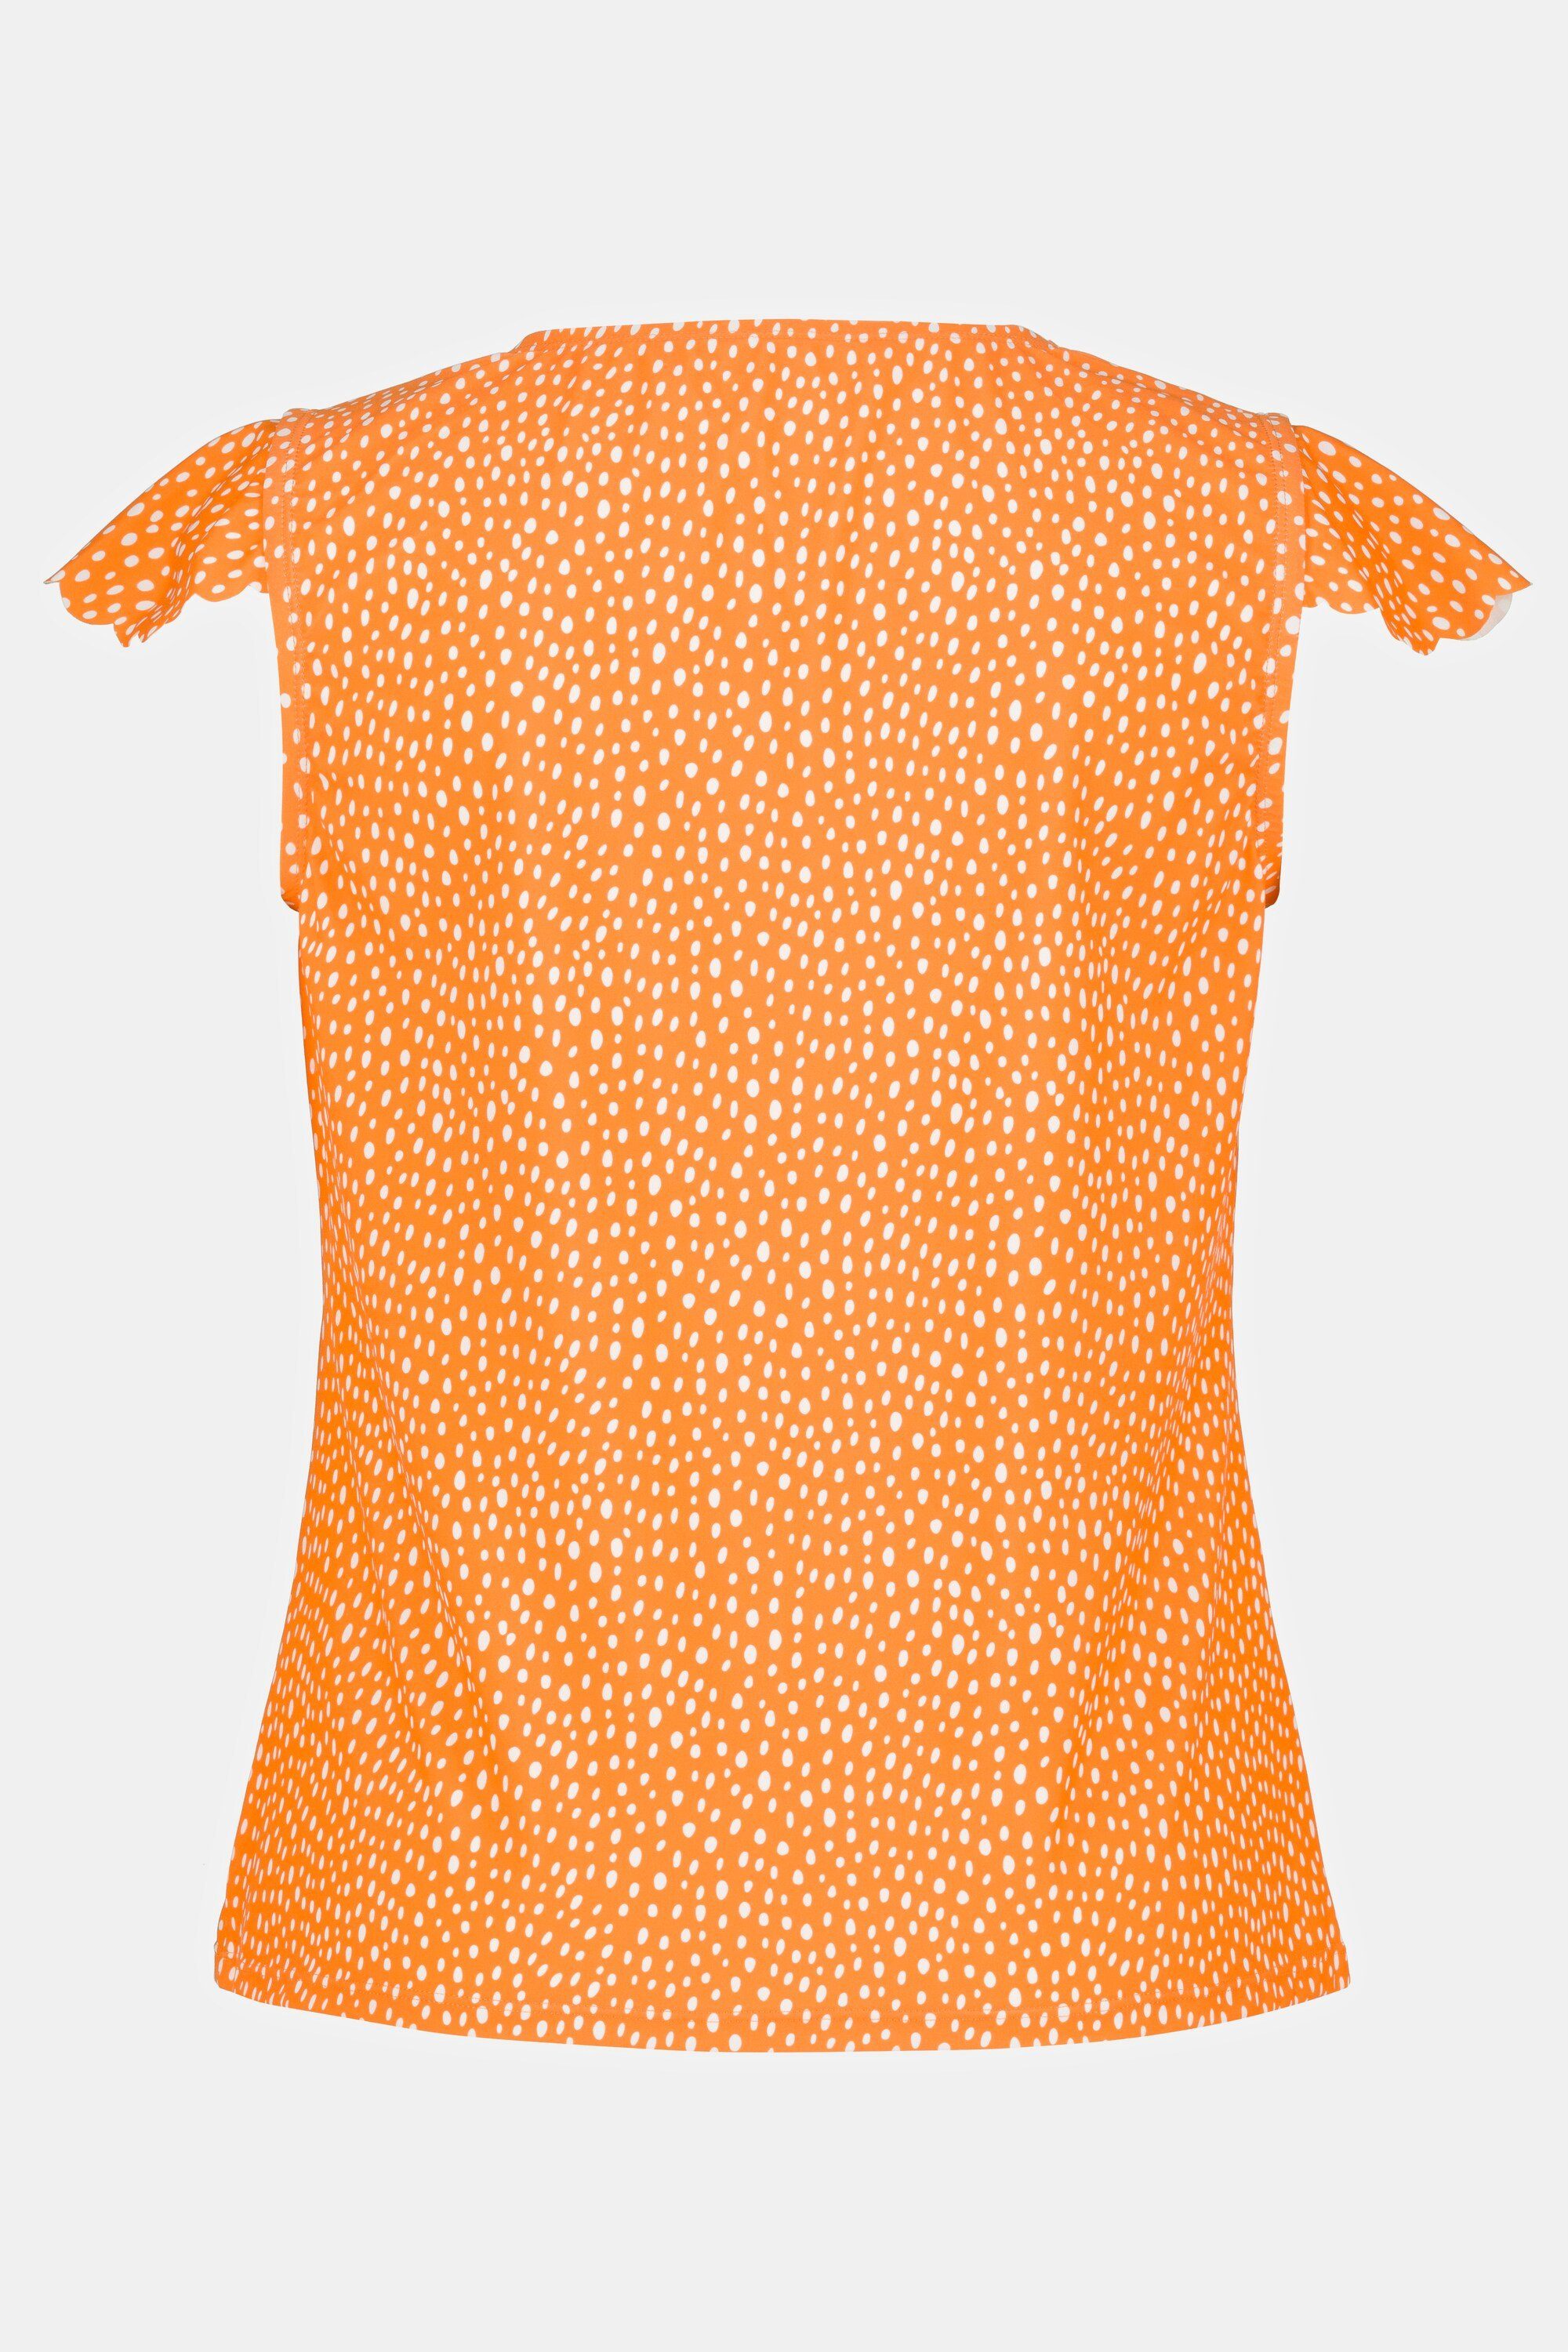 Popken Tankini T-Shirt Cup-Ärmel Ulla orange UV-Schutz V-Ausschnitt 50+